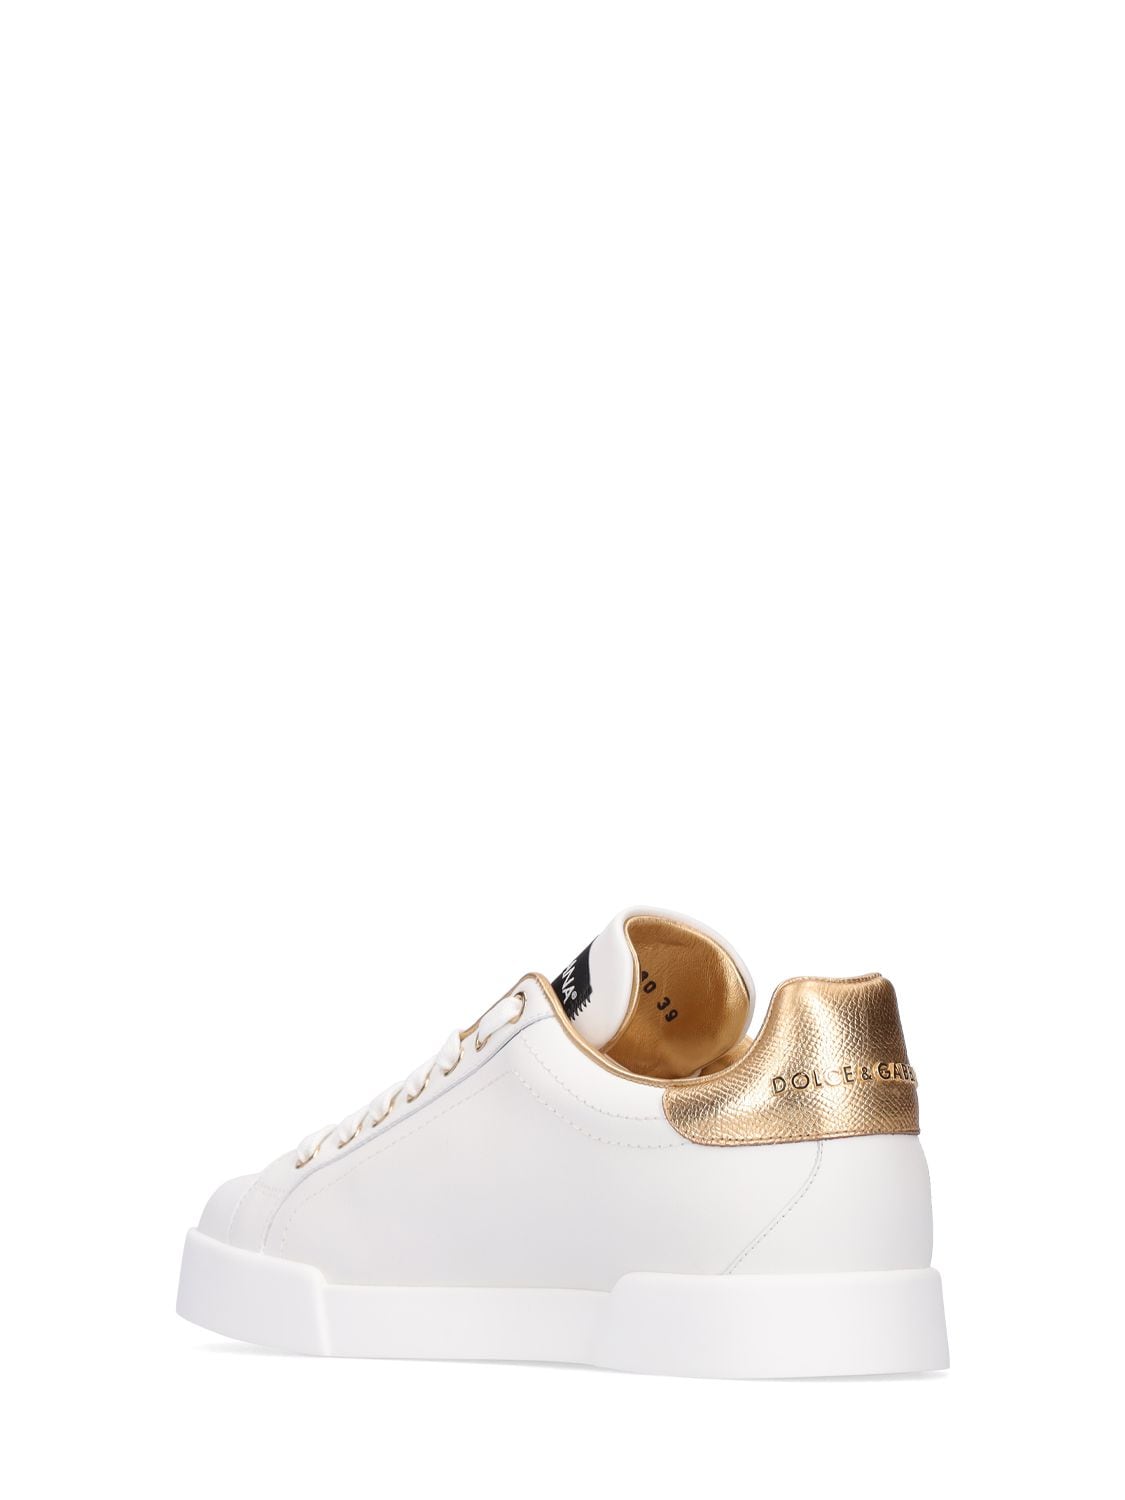 Shop Dolce & Gabbana 20mm Portofino Leather Sneakers In White,gold